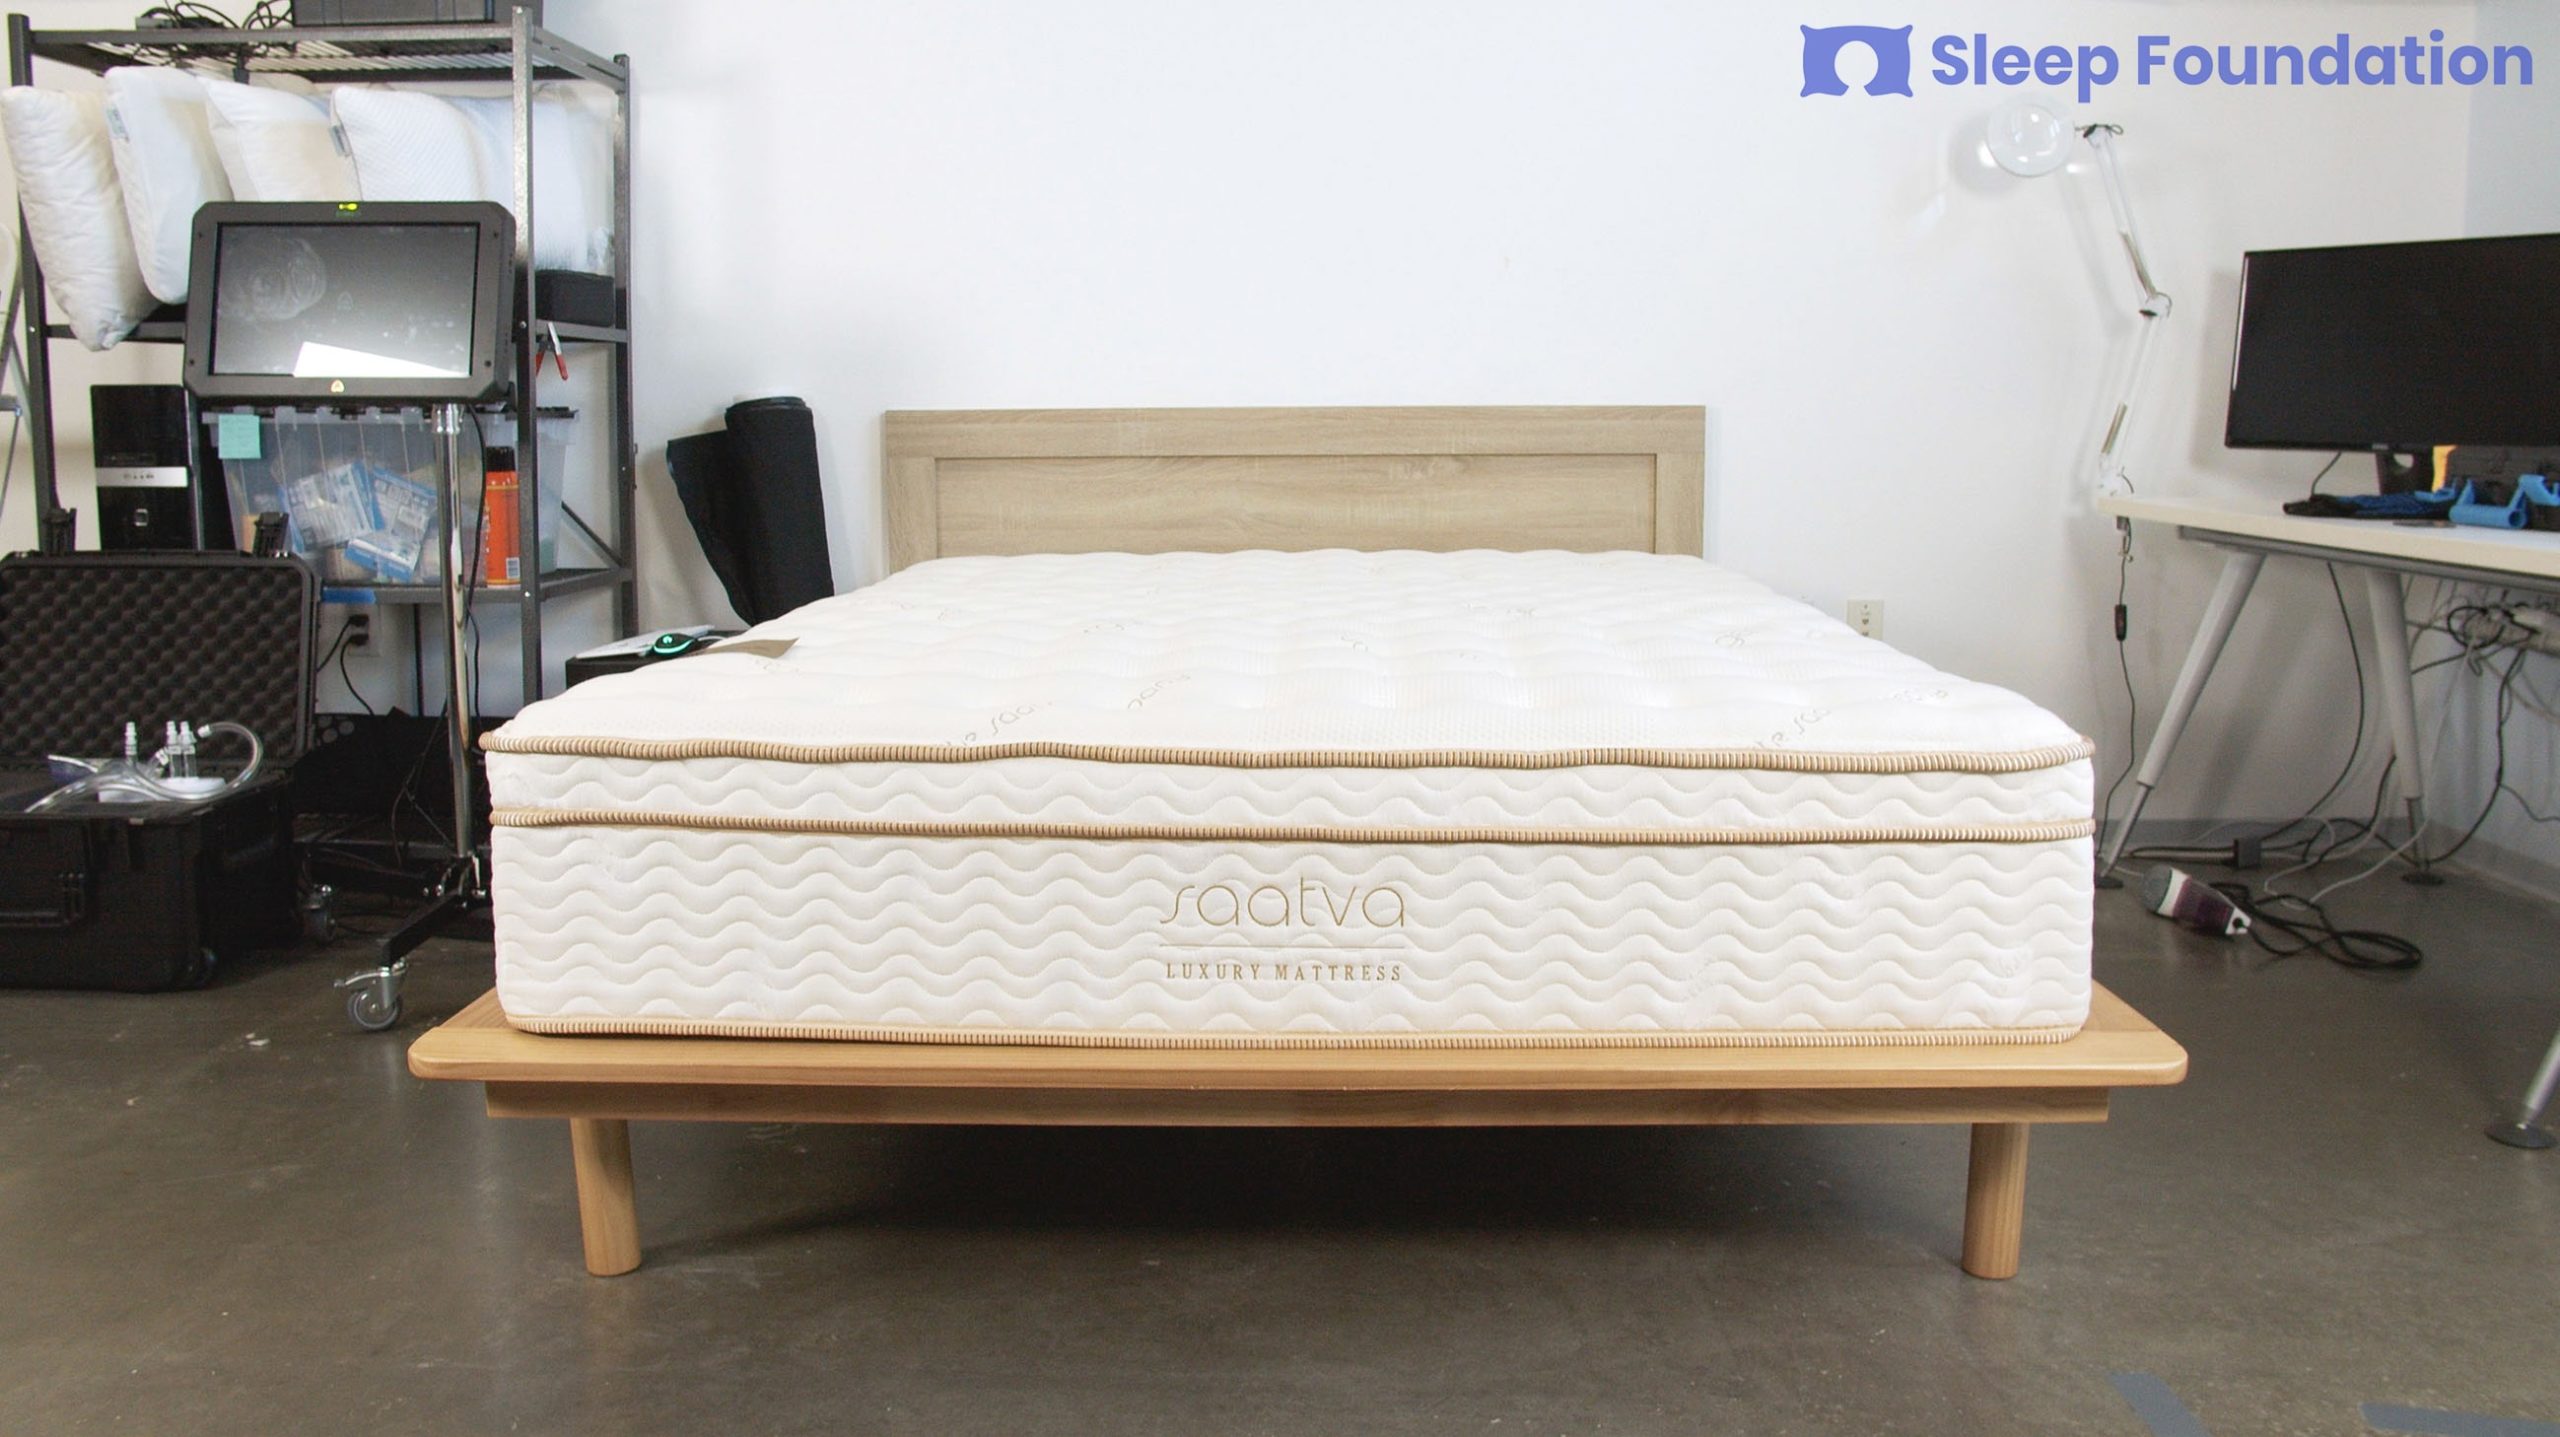 reddit best hybrid mattresses for side sleepers